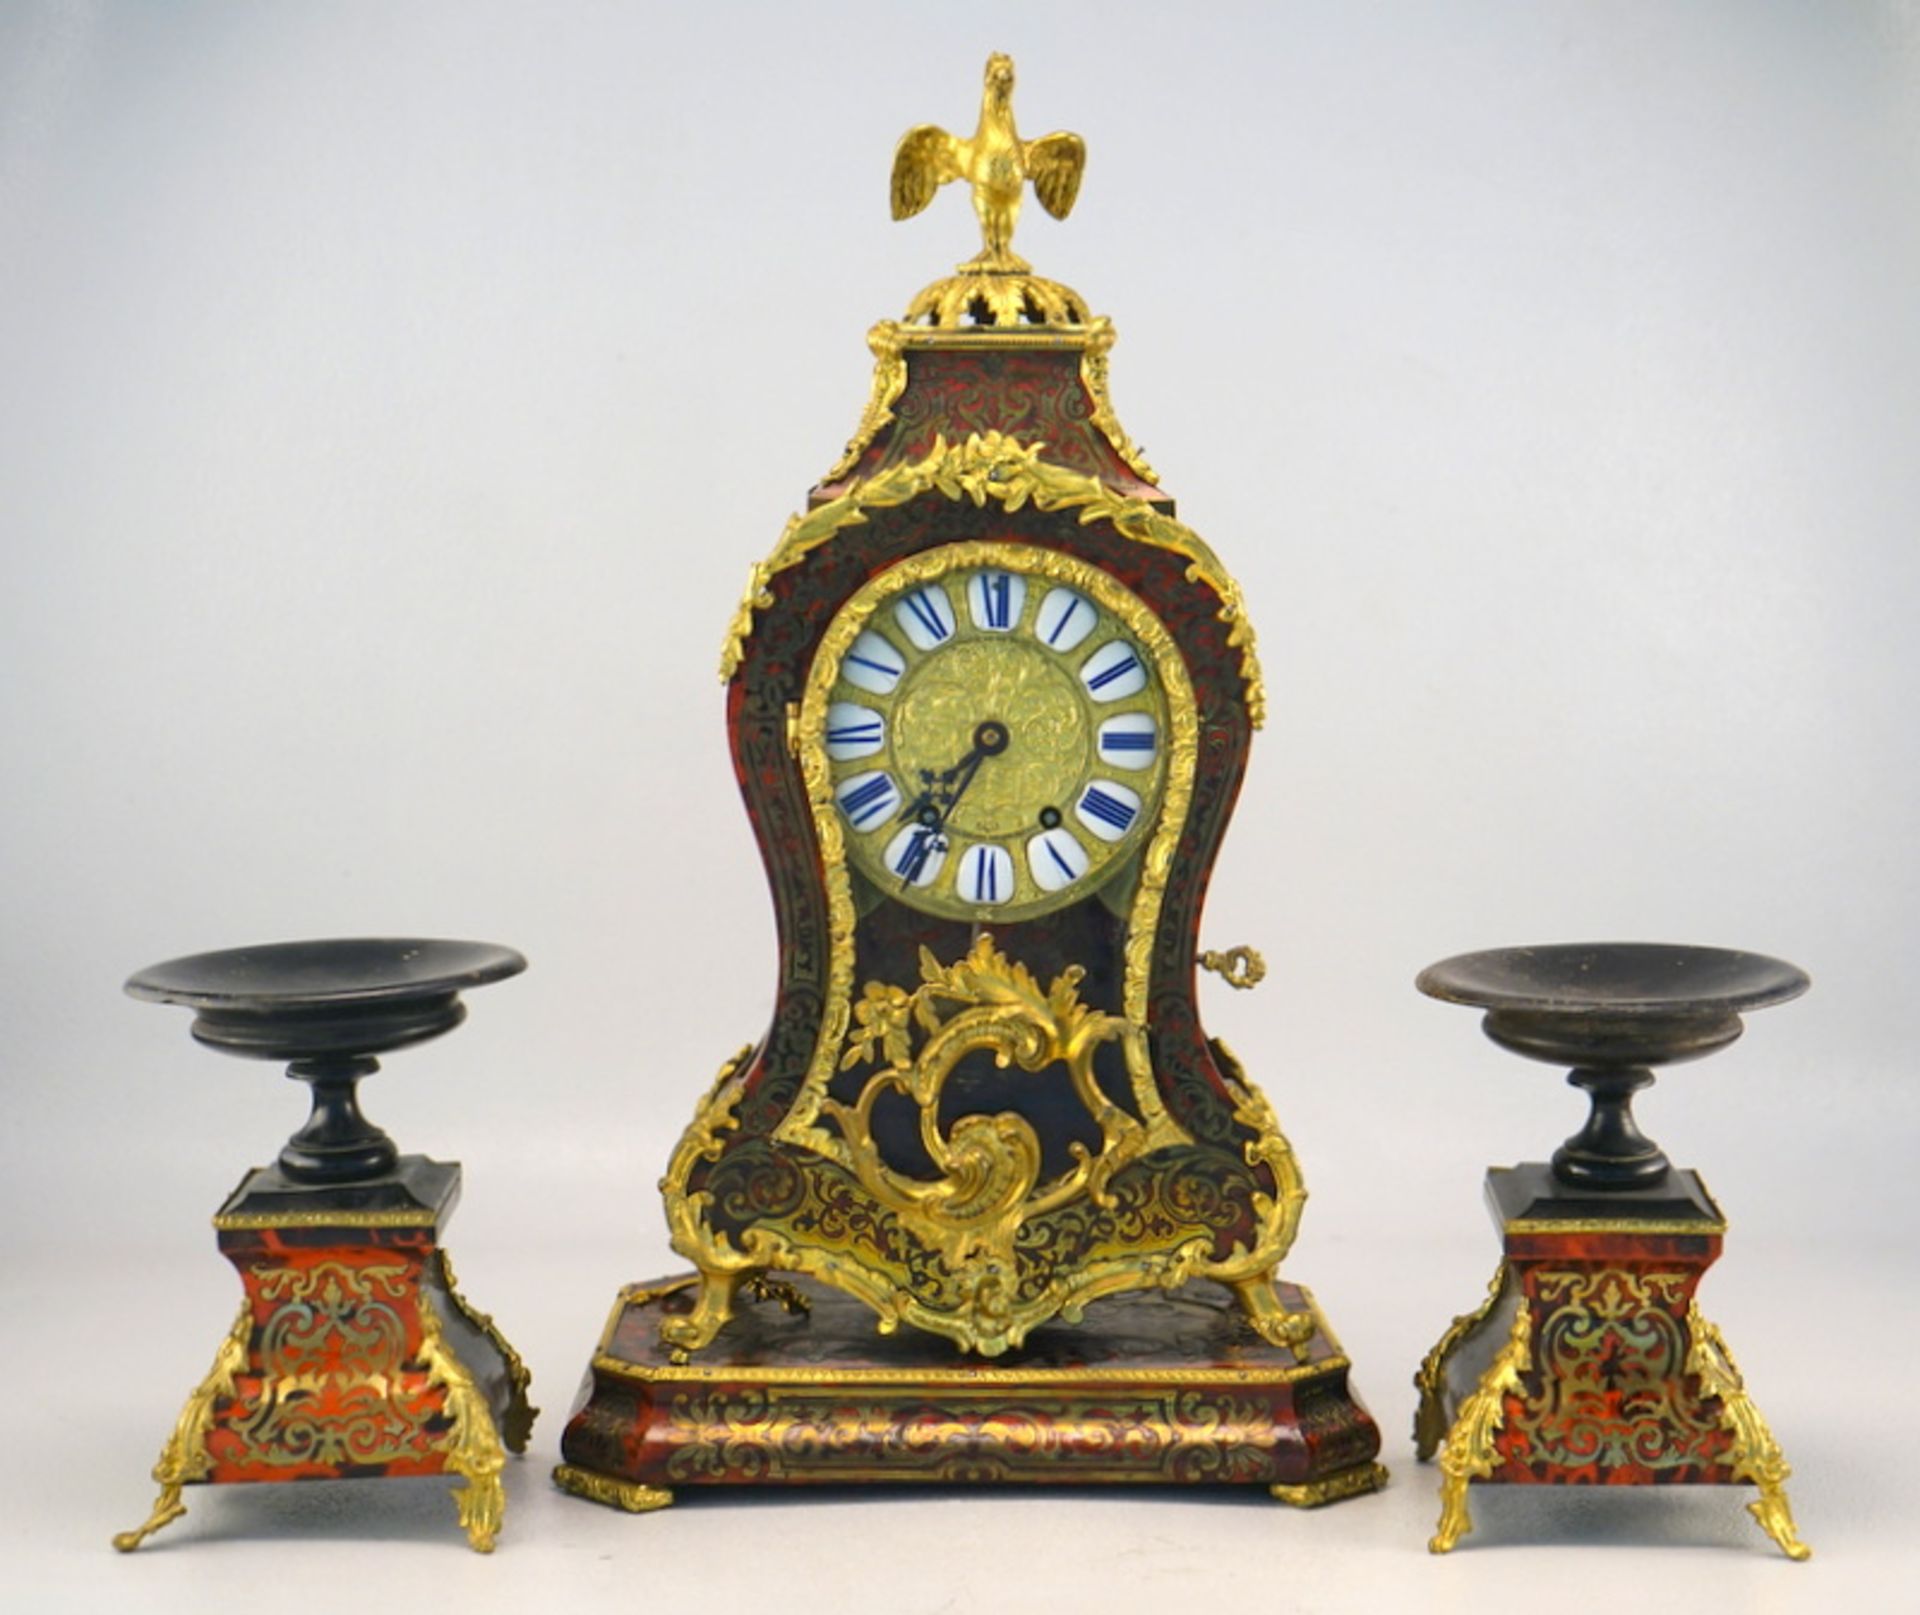 Schöne Boulle Uhr von "Dumolineuf a.H. Molle a Paris" 19. Jhd.